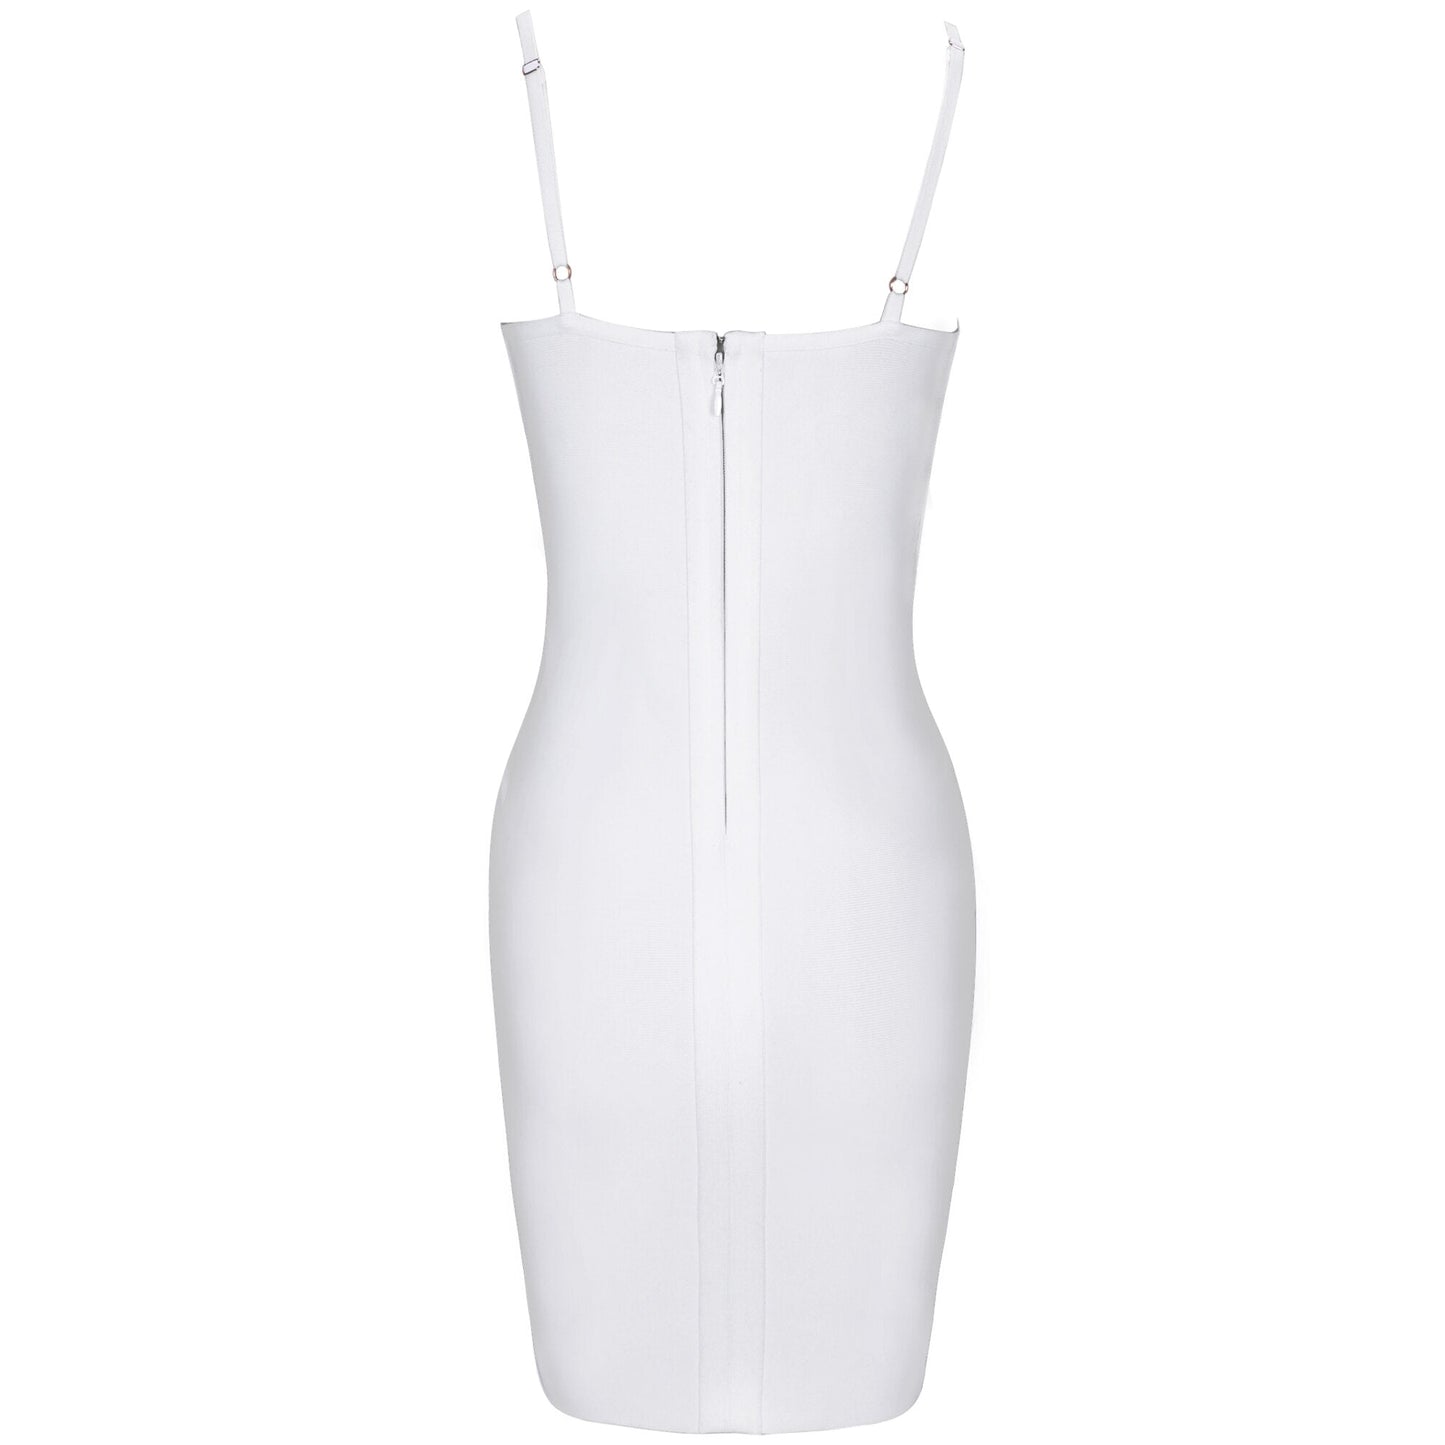 Fascinating Bandage Dress- White Fashion Closet Clothing